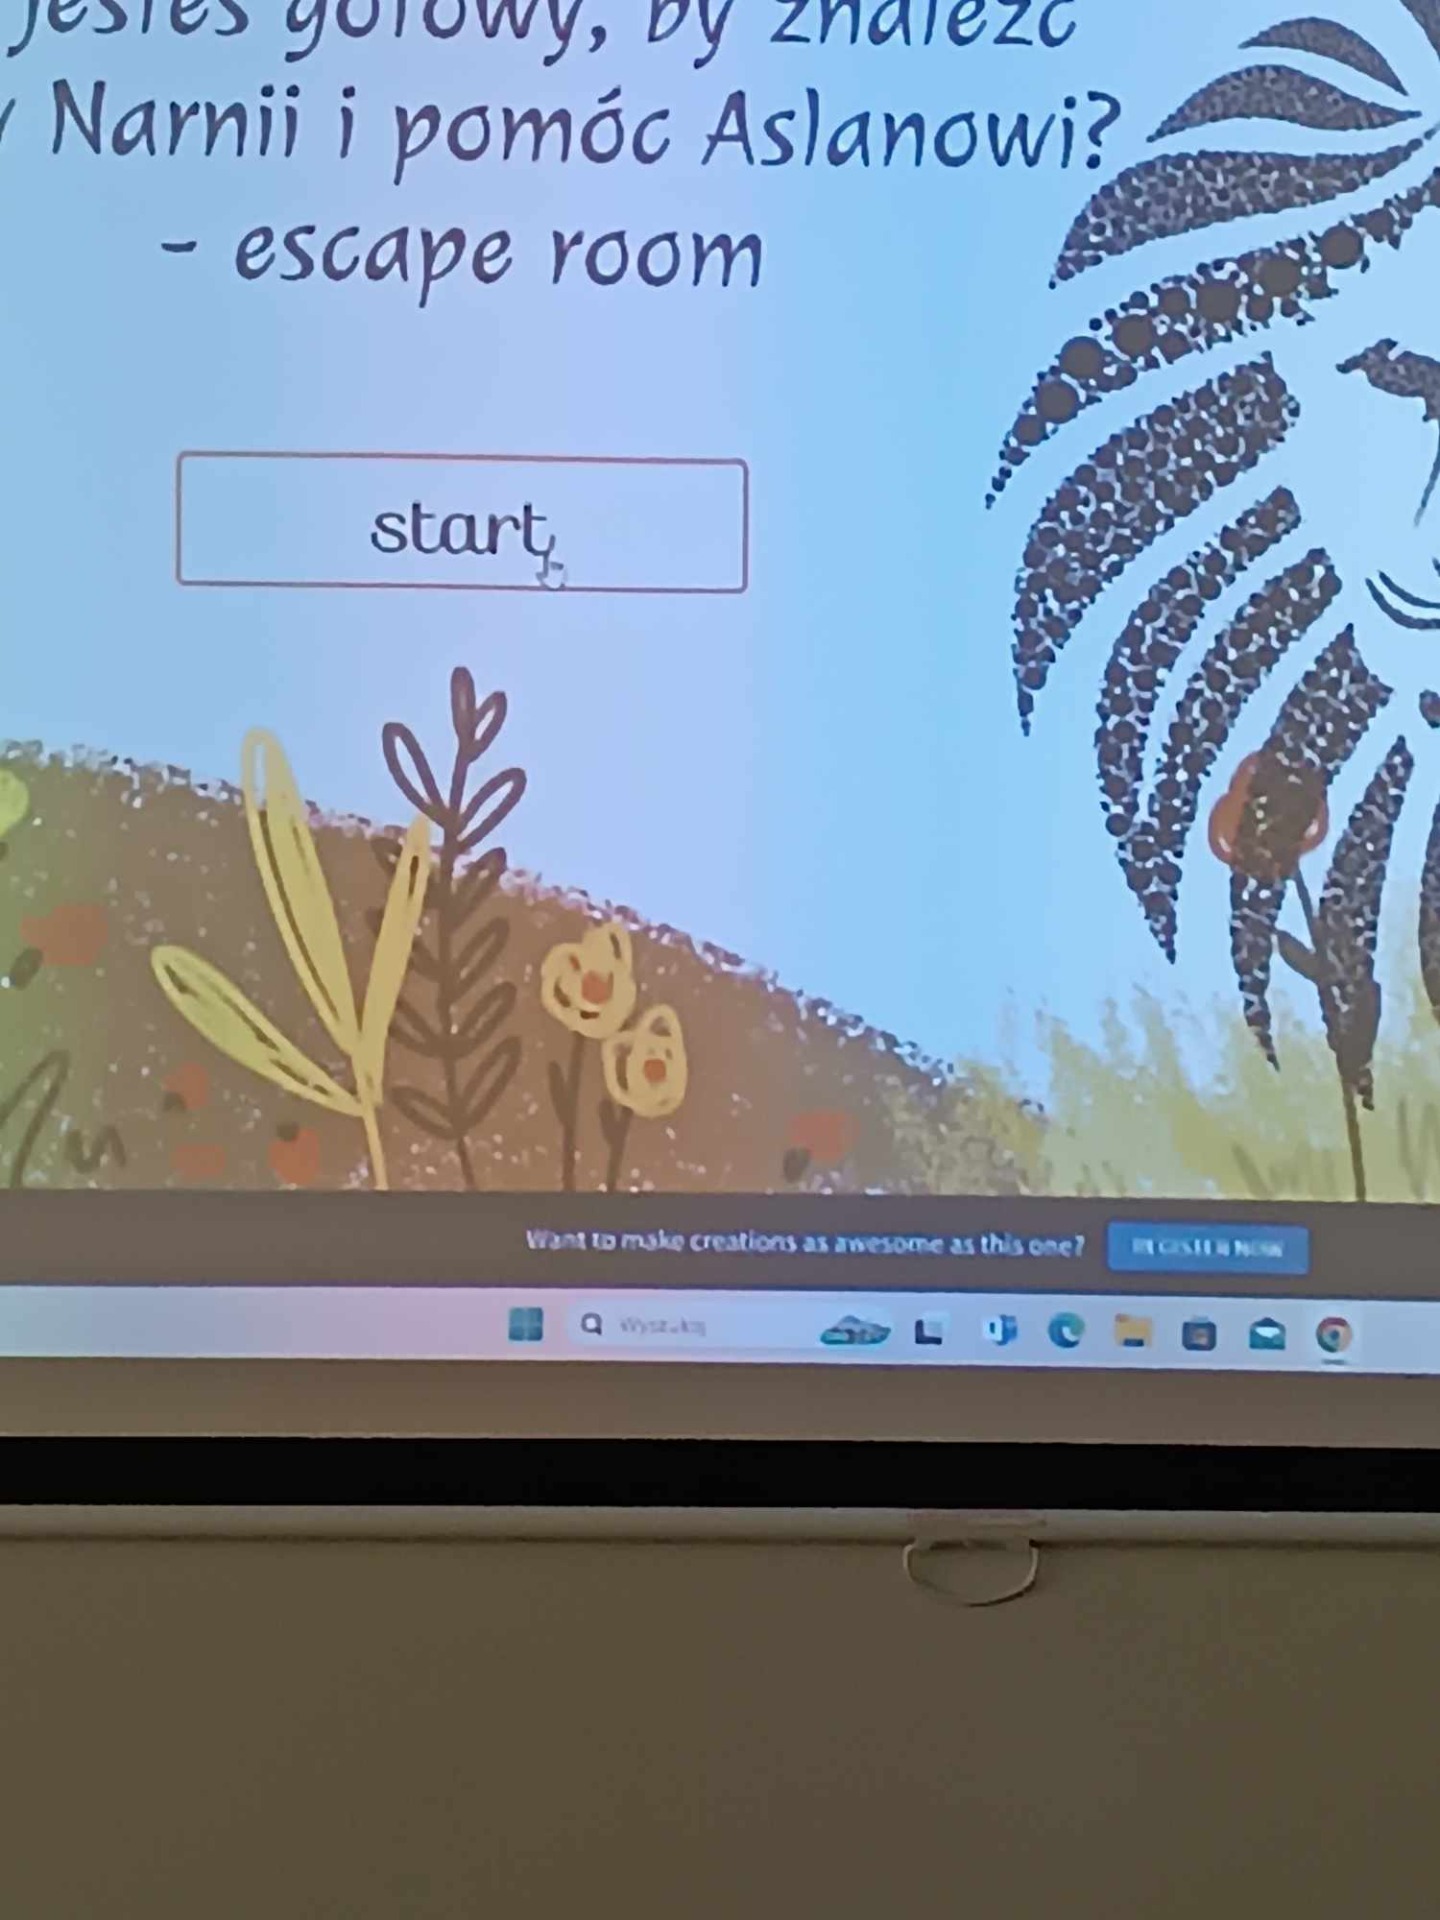 Uczniowie szukają wyjścia z wirtualnego escape roomu.